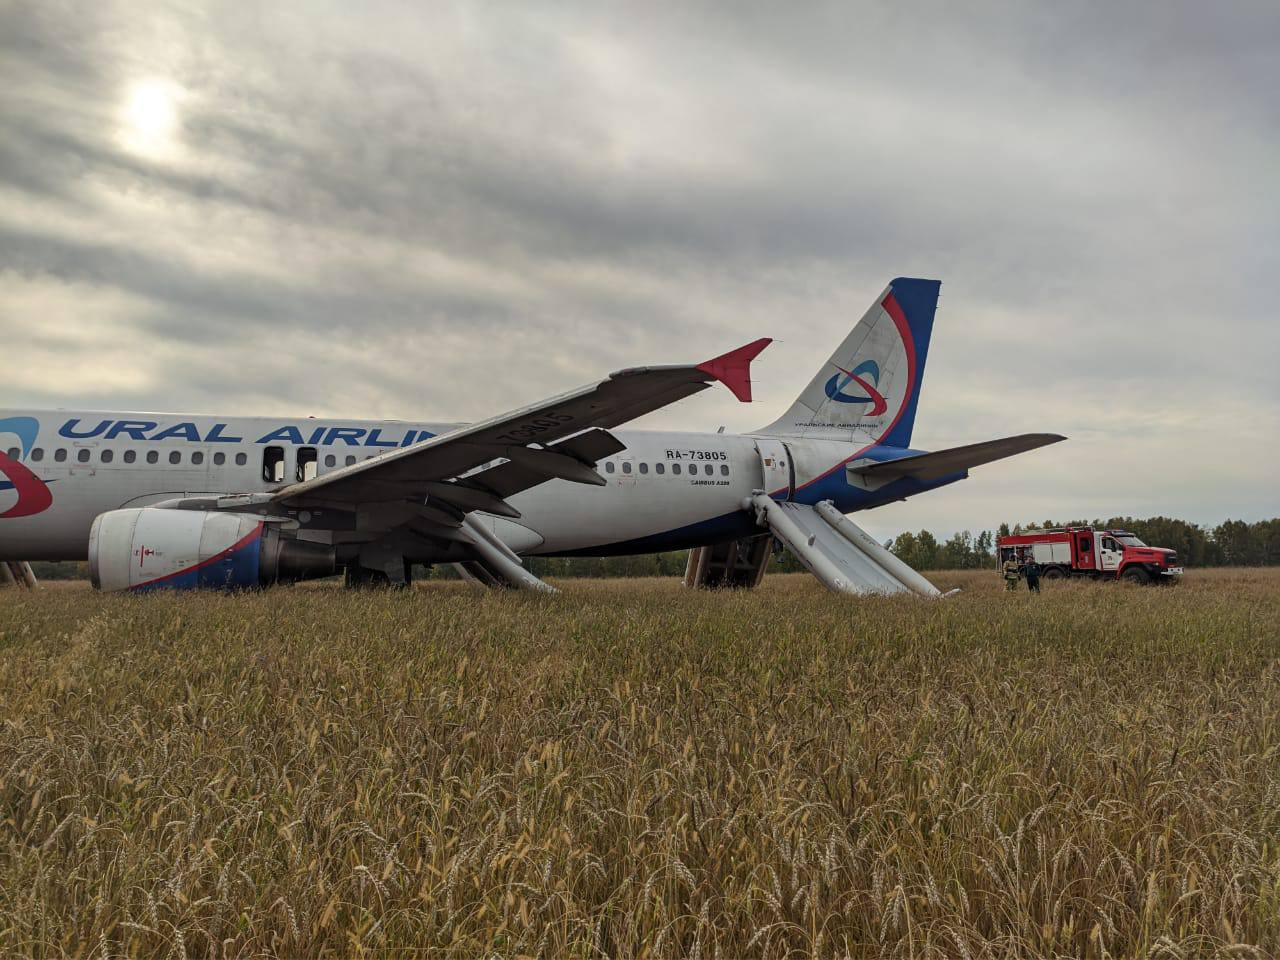 Самолет «Уральских авиалиний» аварийно приземлился в поле под Новосибирском. Что известно о ЧП на данный момент